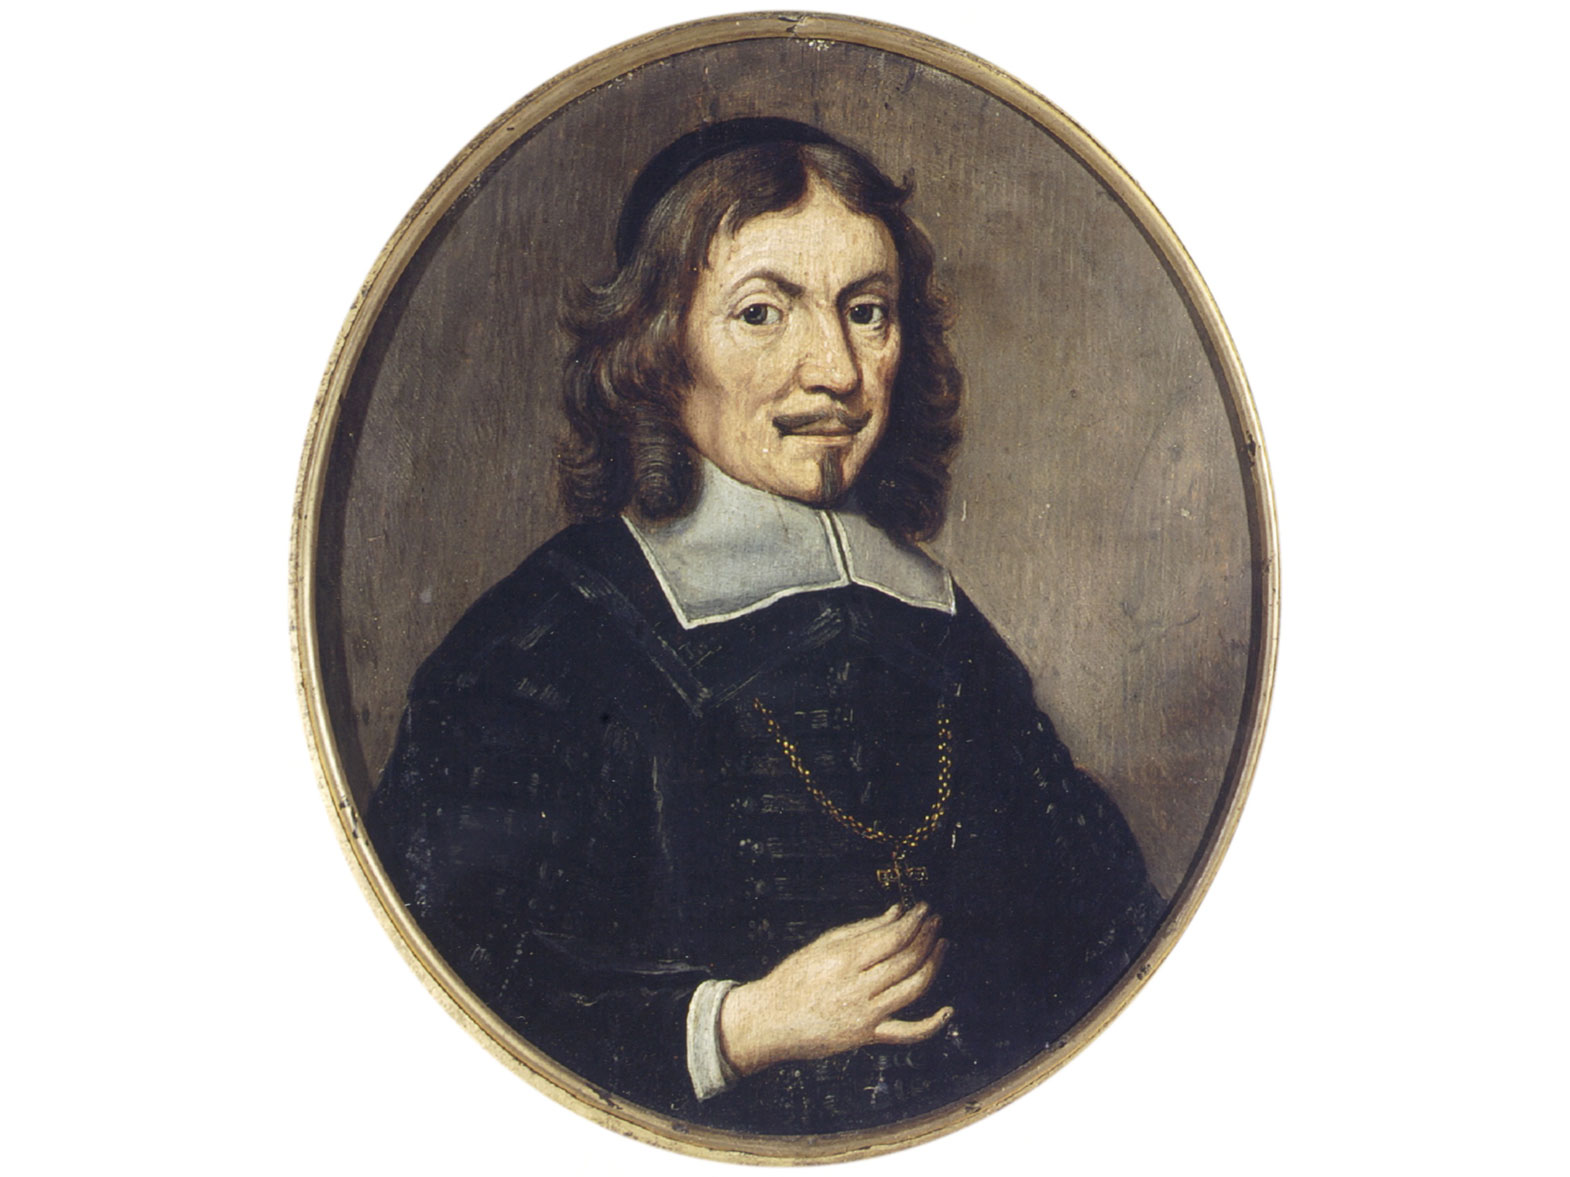 Bernard van Galen